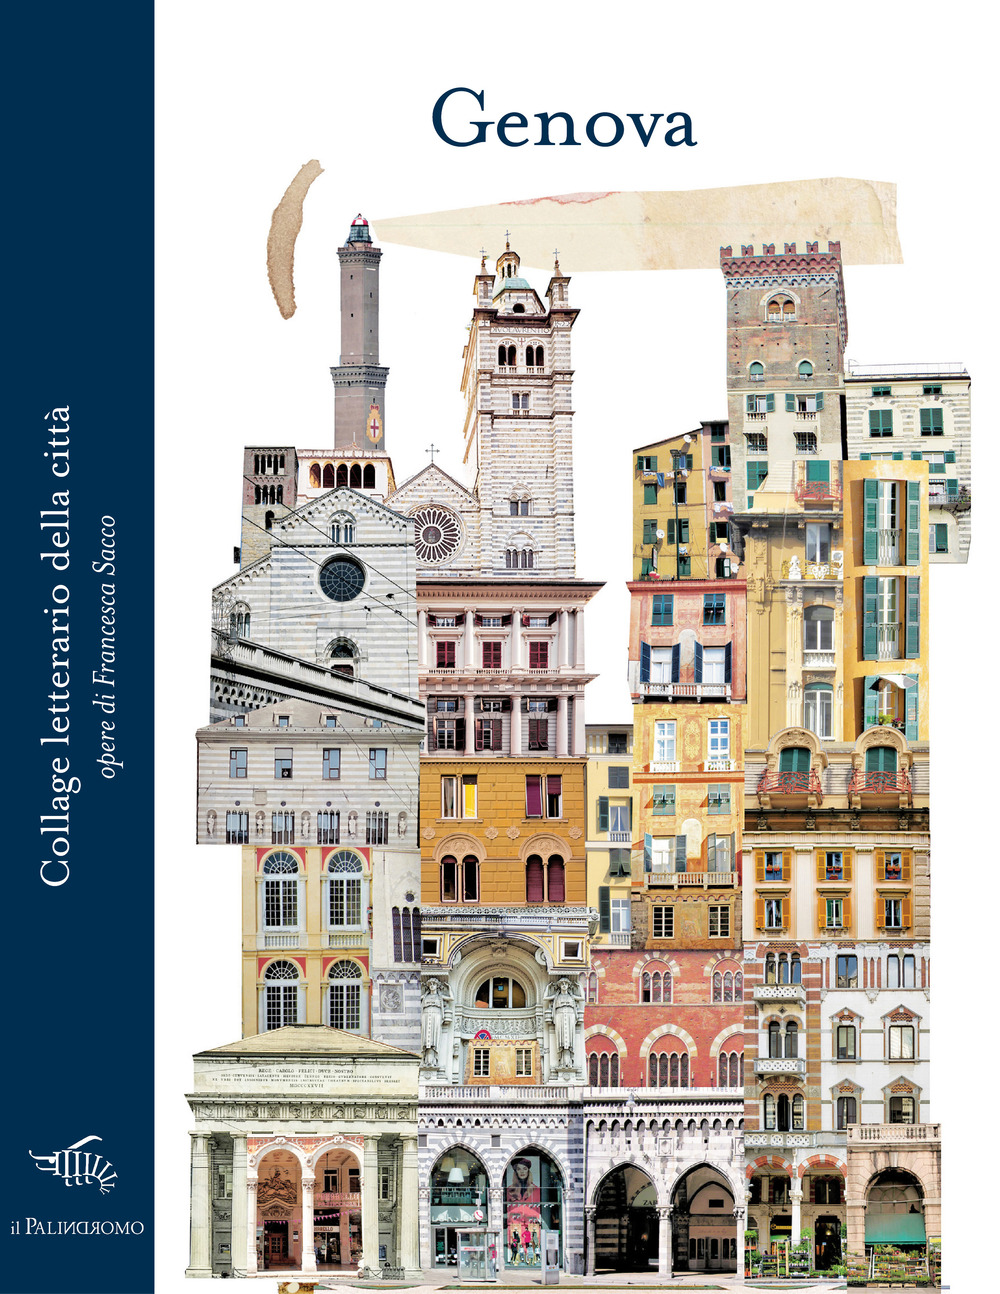 Genova. Collage letterario della città. Ediz. illustrata